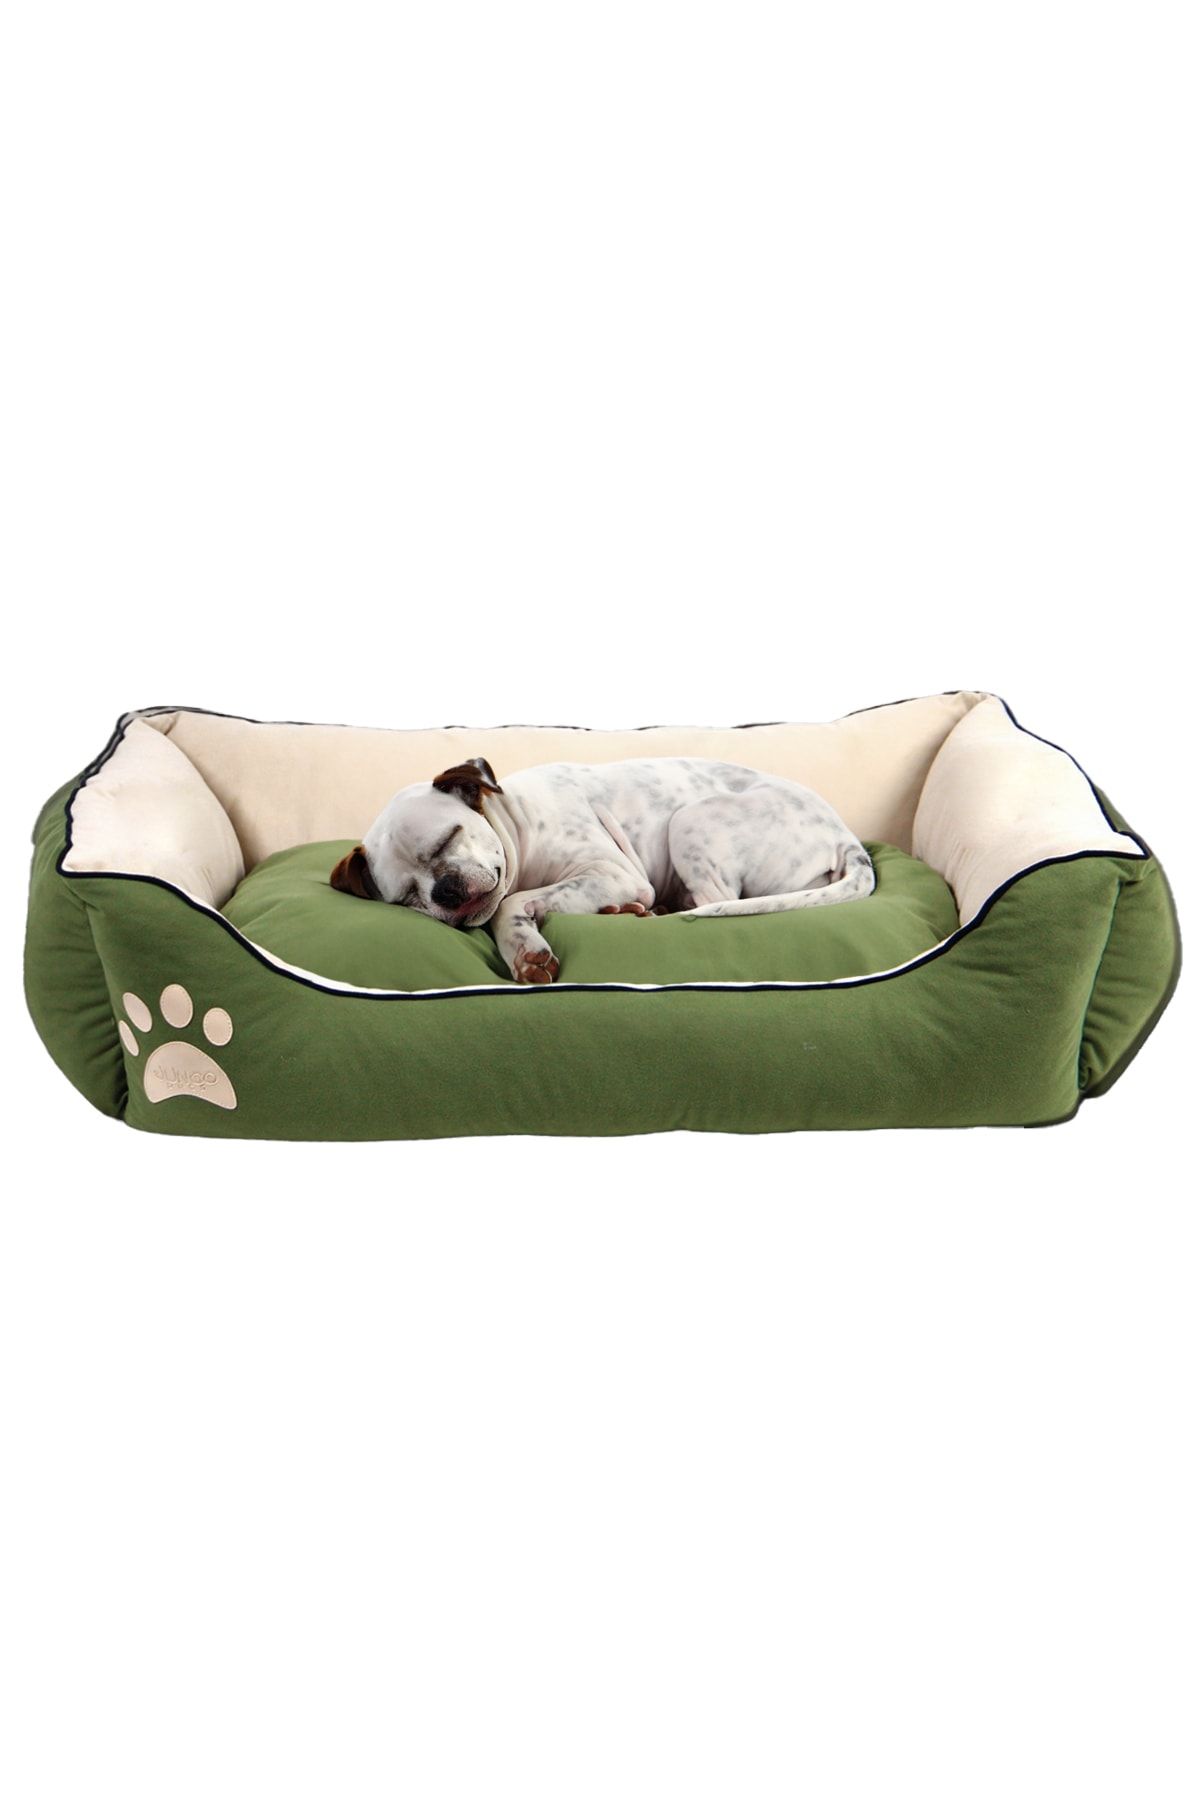 Jungo Pets Lucy Yeşil & Ekru Yüksek Kaliteli Köpek Yatağı